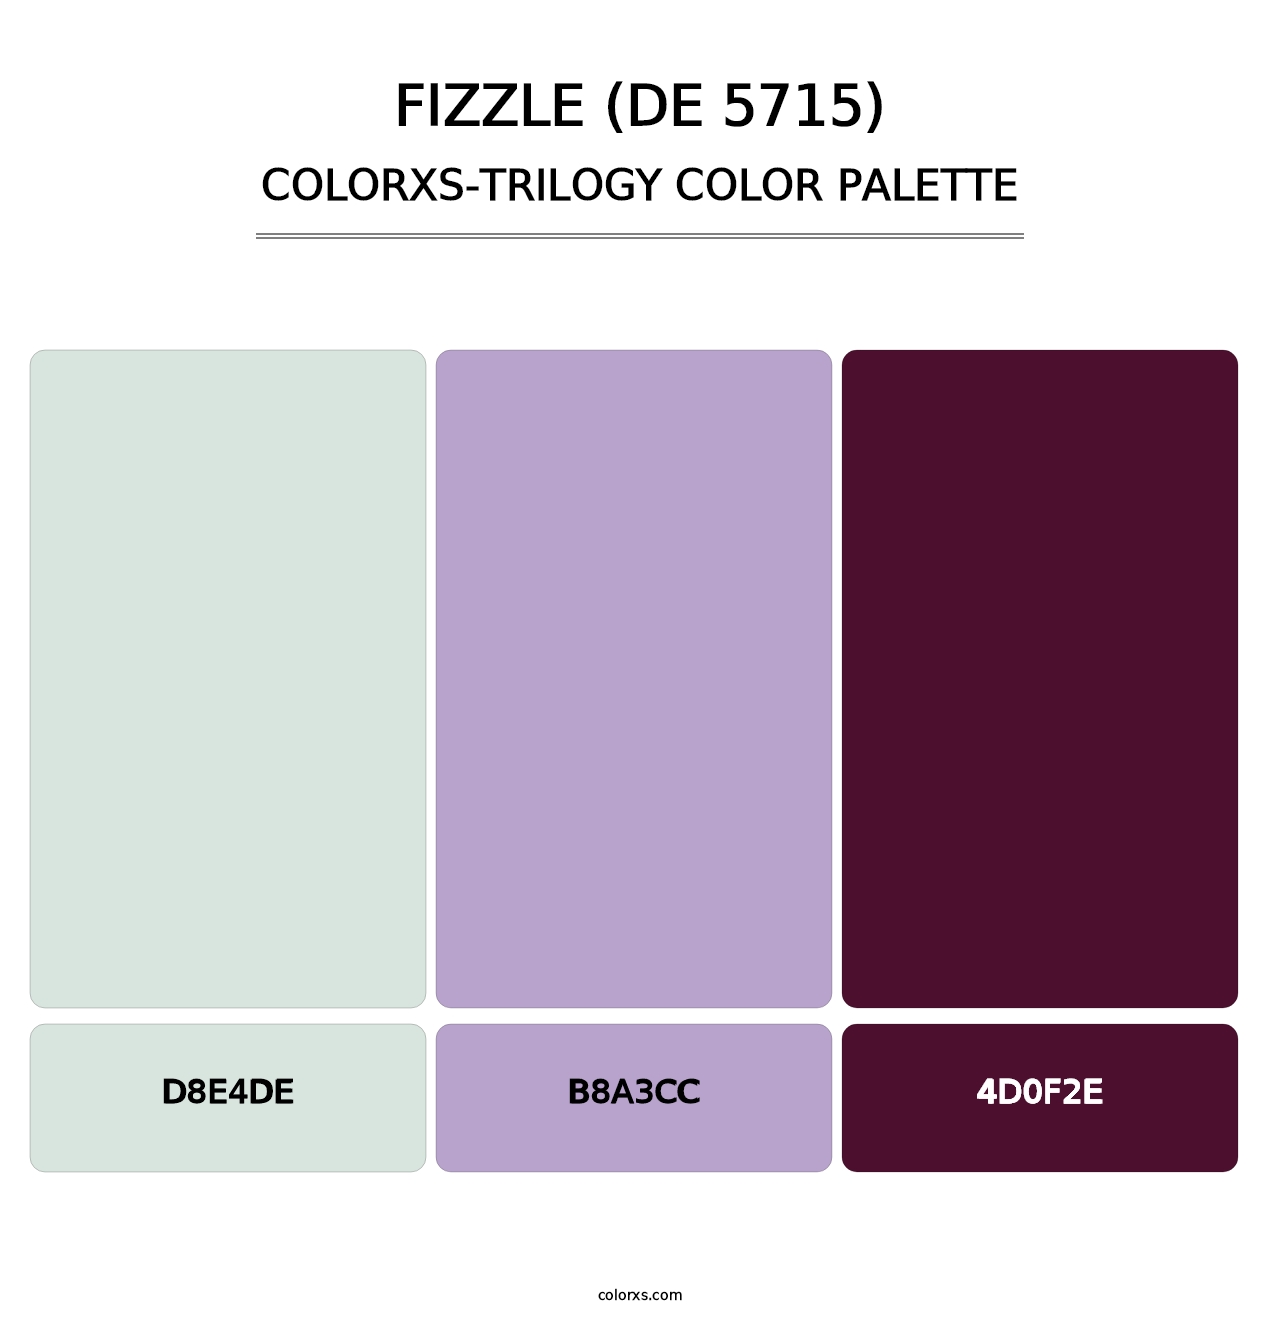 Fizzle (DE 5715) - Colorxs Trilogy Palette